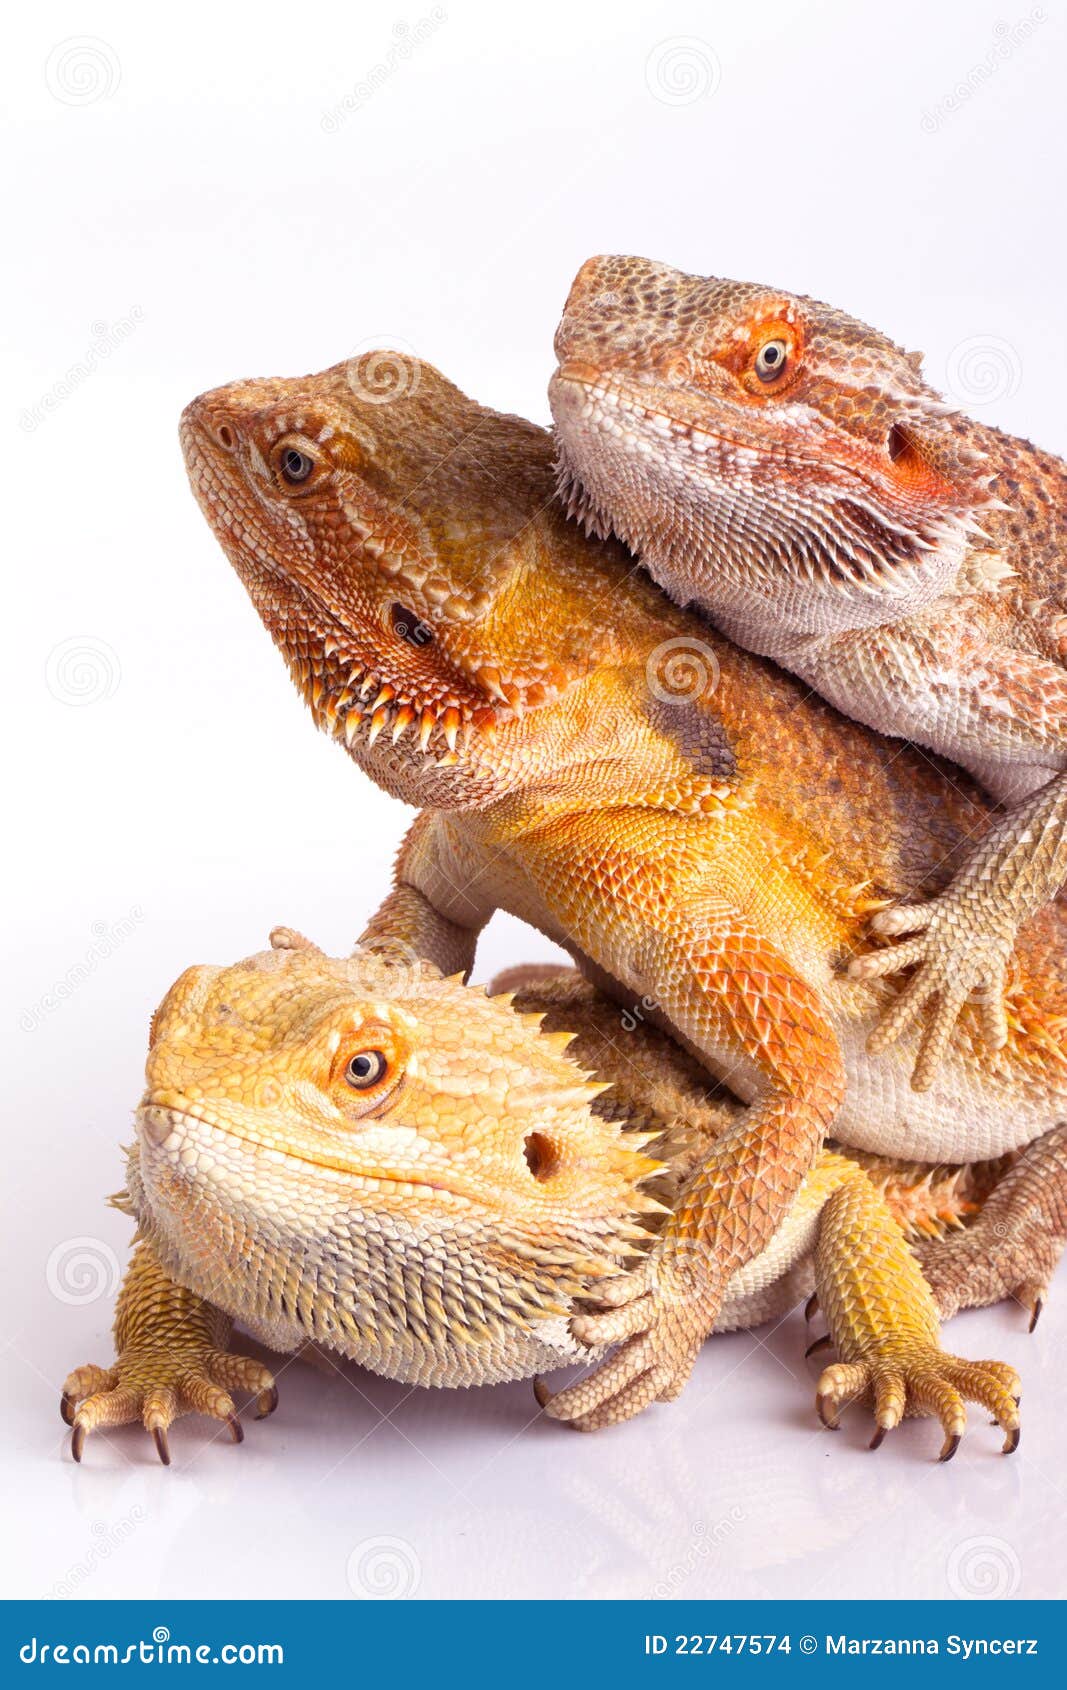 bearded agama lizards